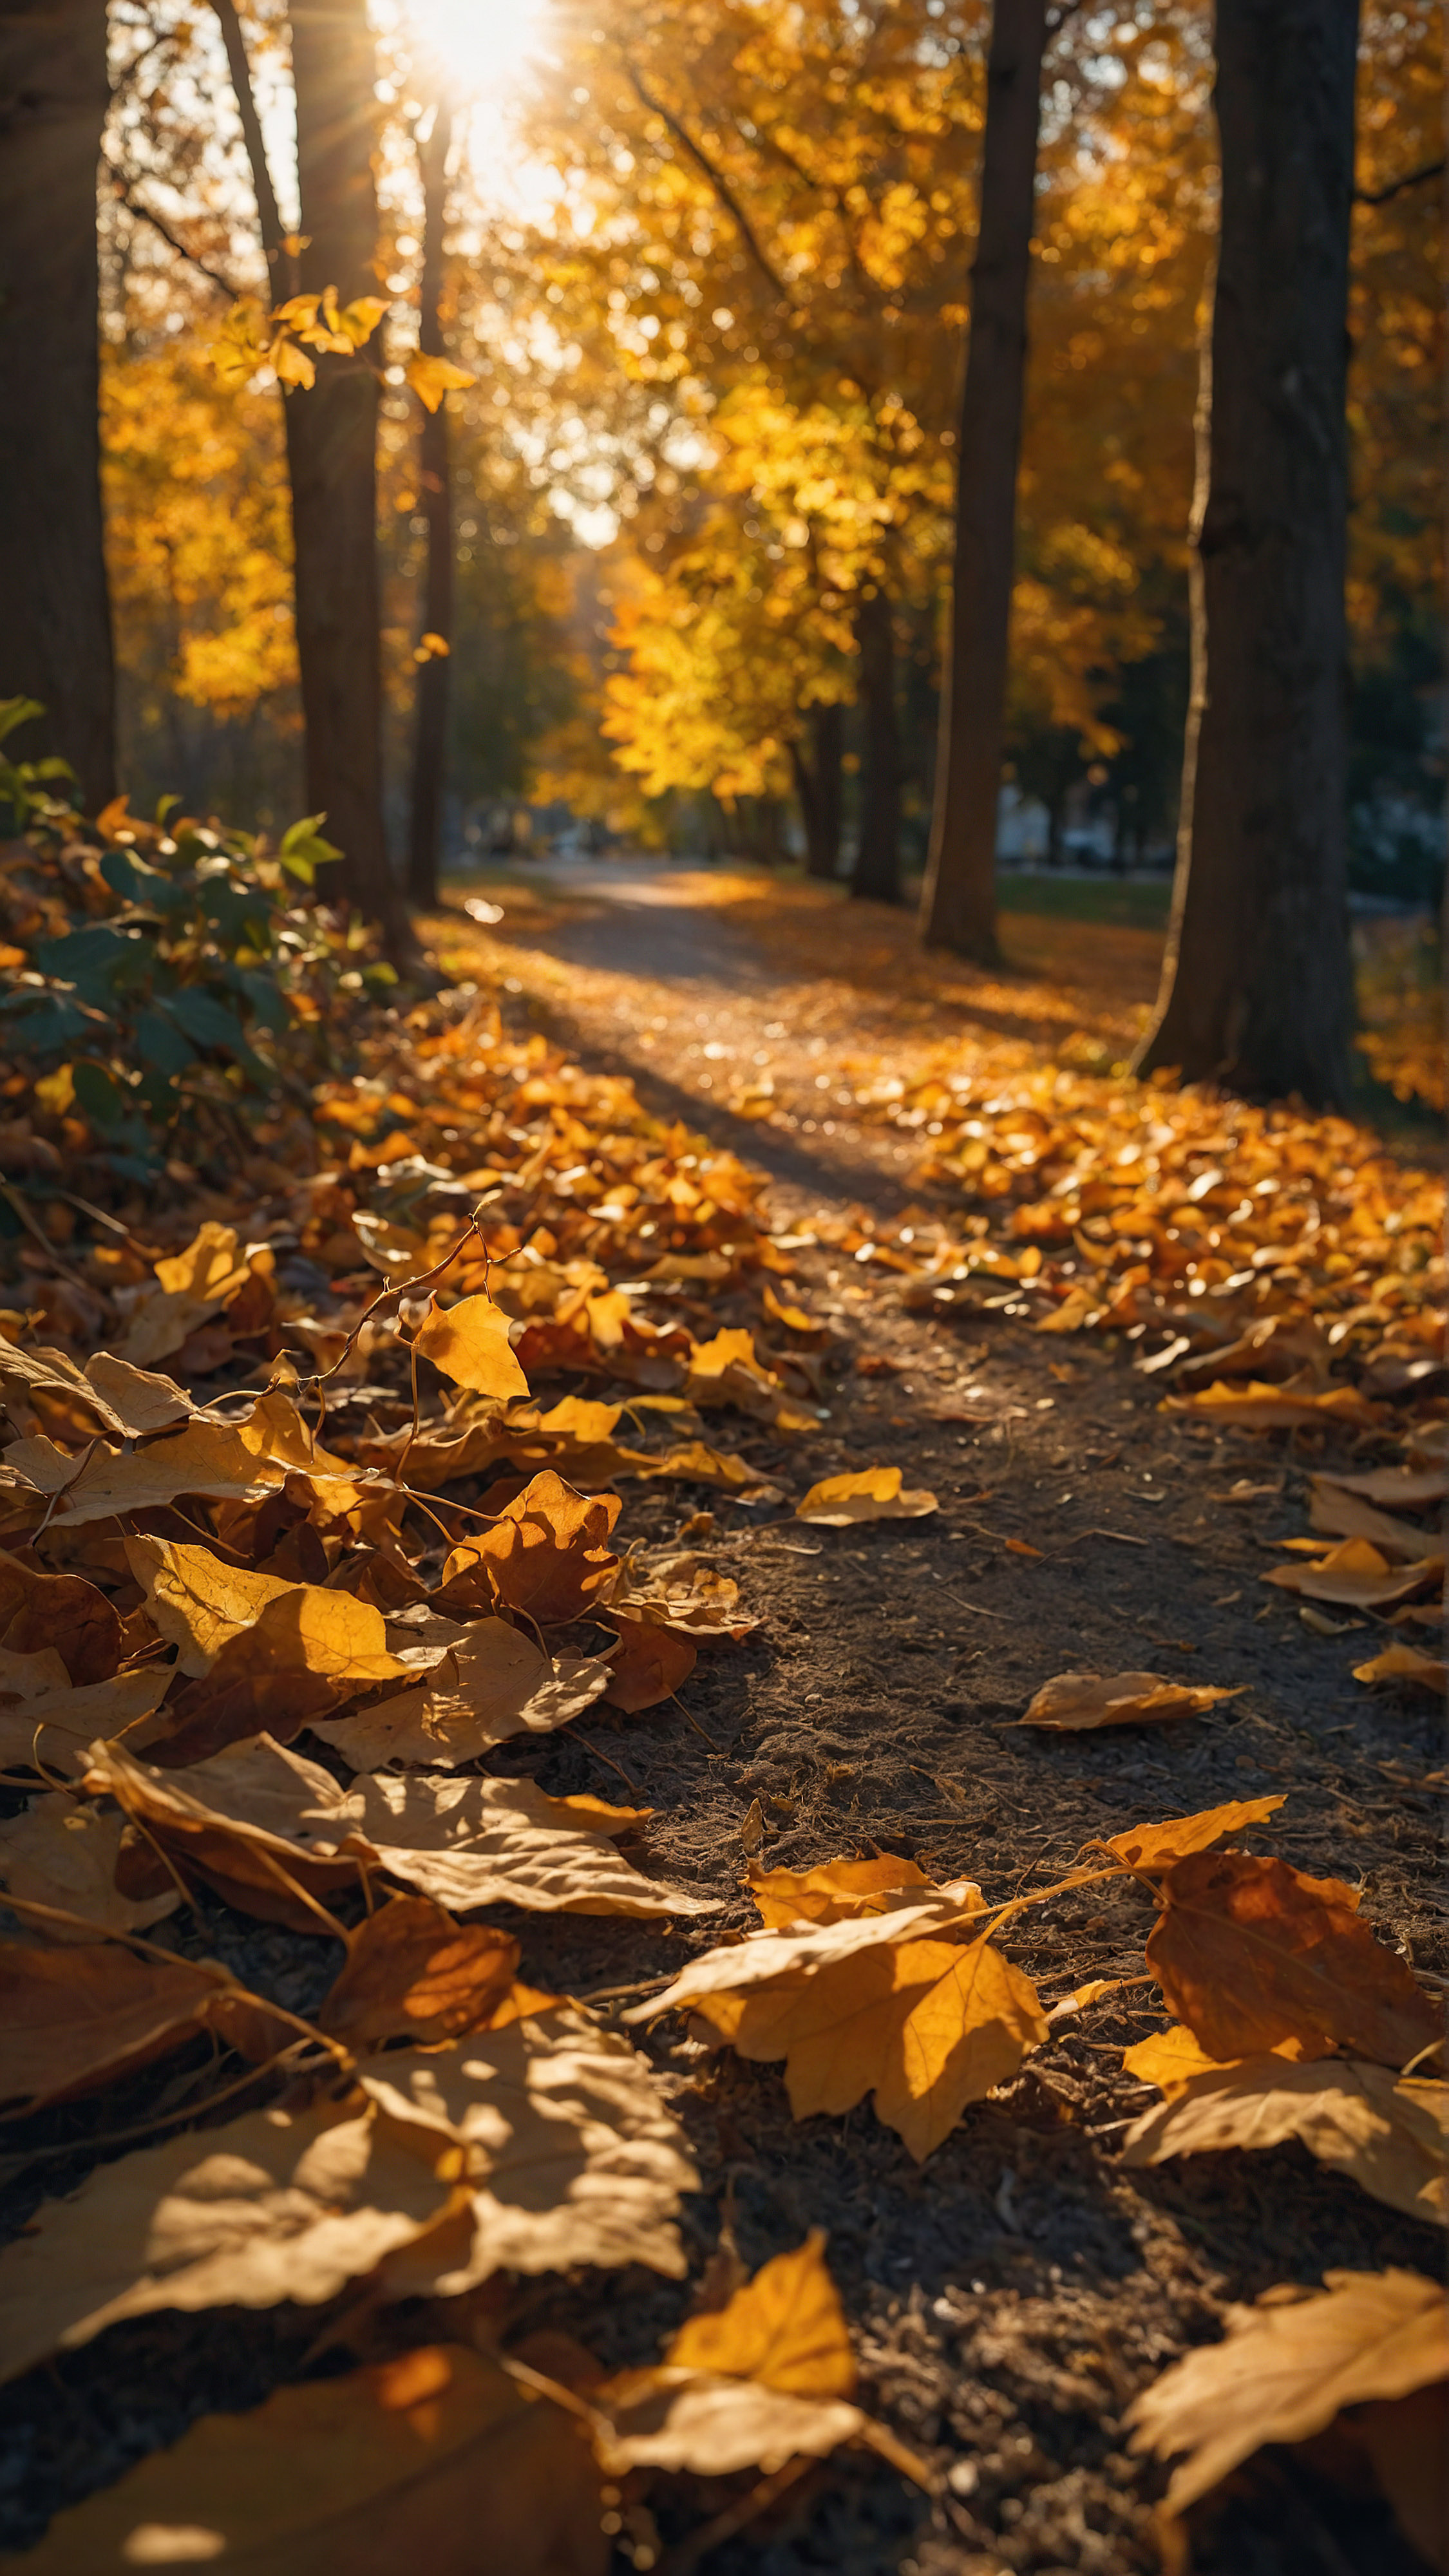 Profitez de la beauté et du style de notre meilleur fond d'écran iPhone 4K, dévoilant une scène d'automne sereine et pittoresque avec des teintes dorées chaudes de feuilles tombées, la lumière du soleil filtrant à travers les feuilles projetant une douce lueur, améliorant les couleurs riches de la saison.